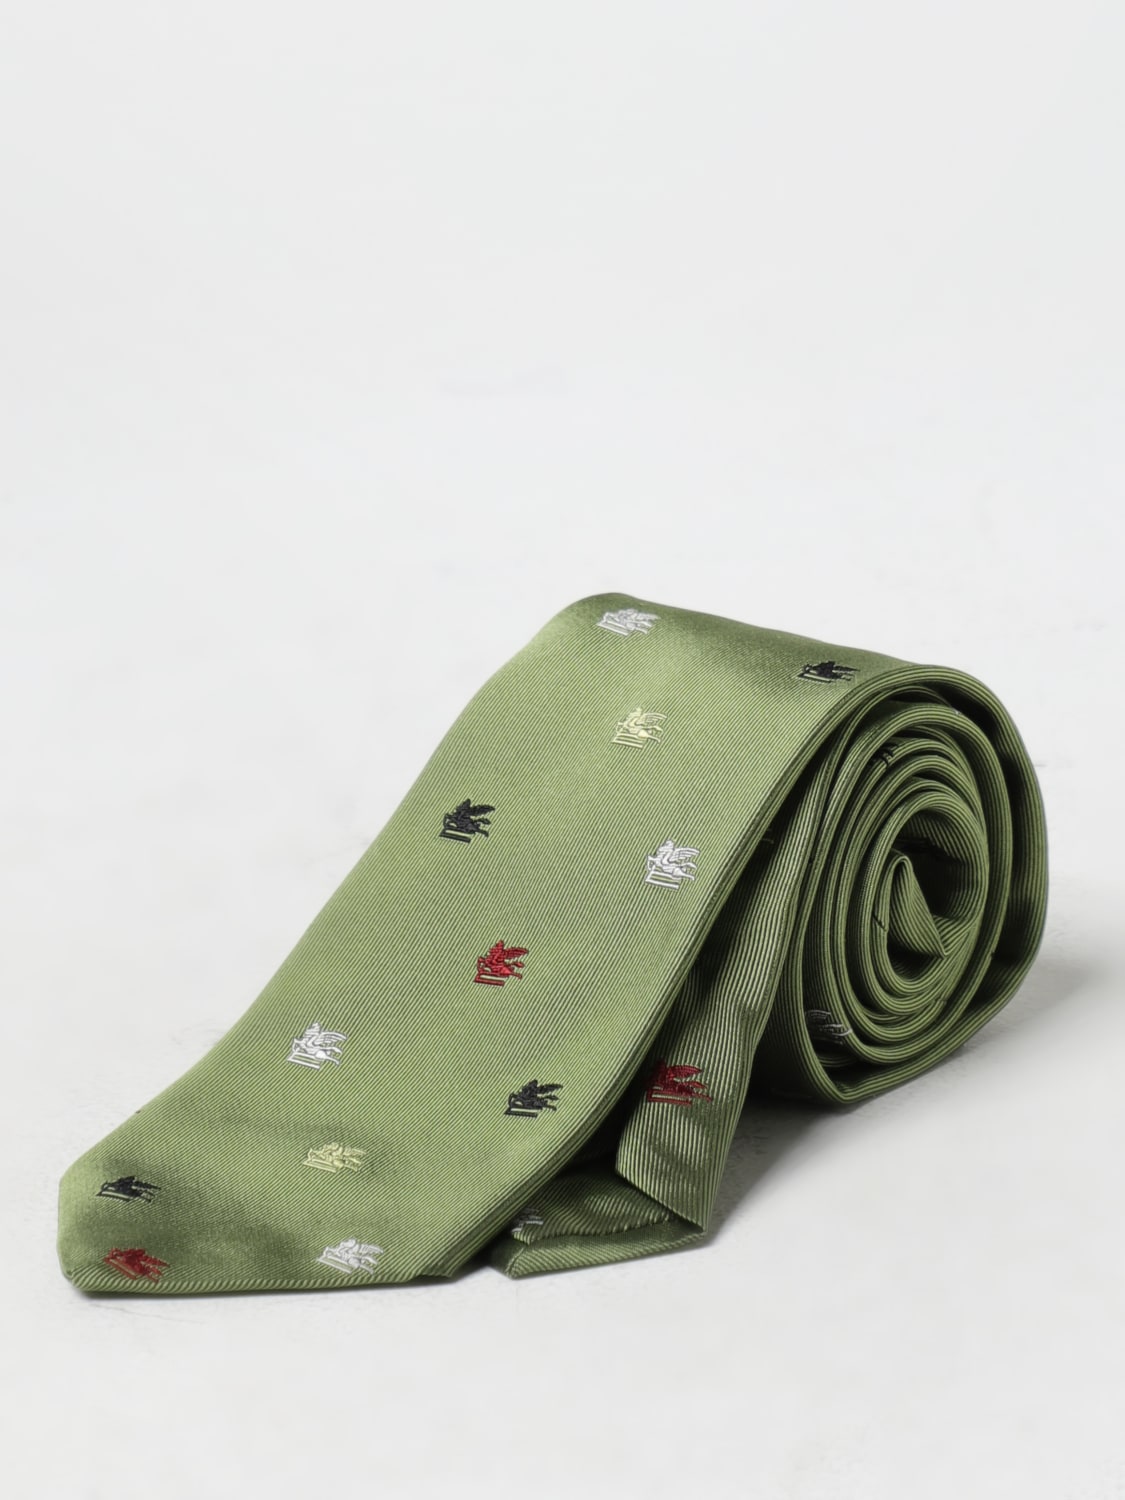 Etro Jacquard Tie